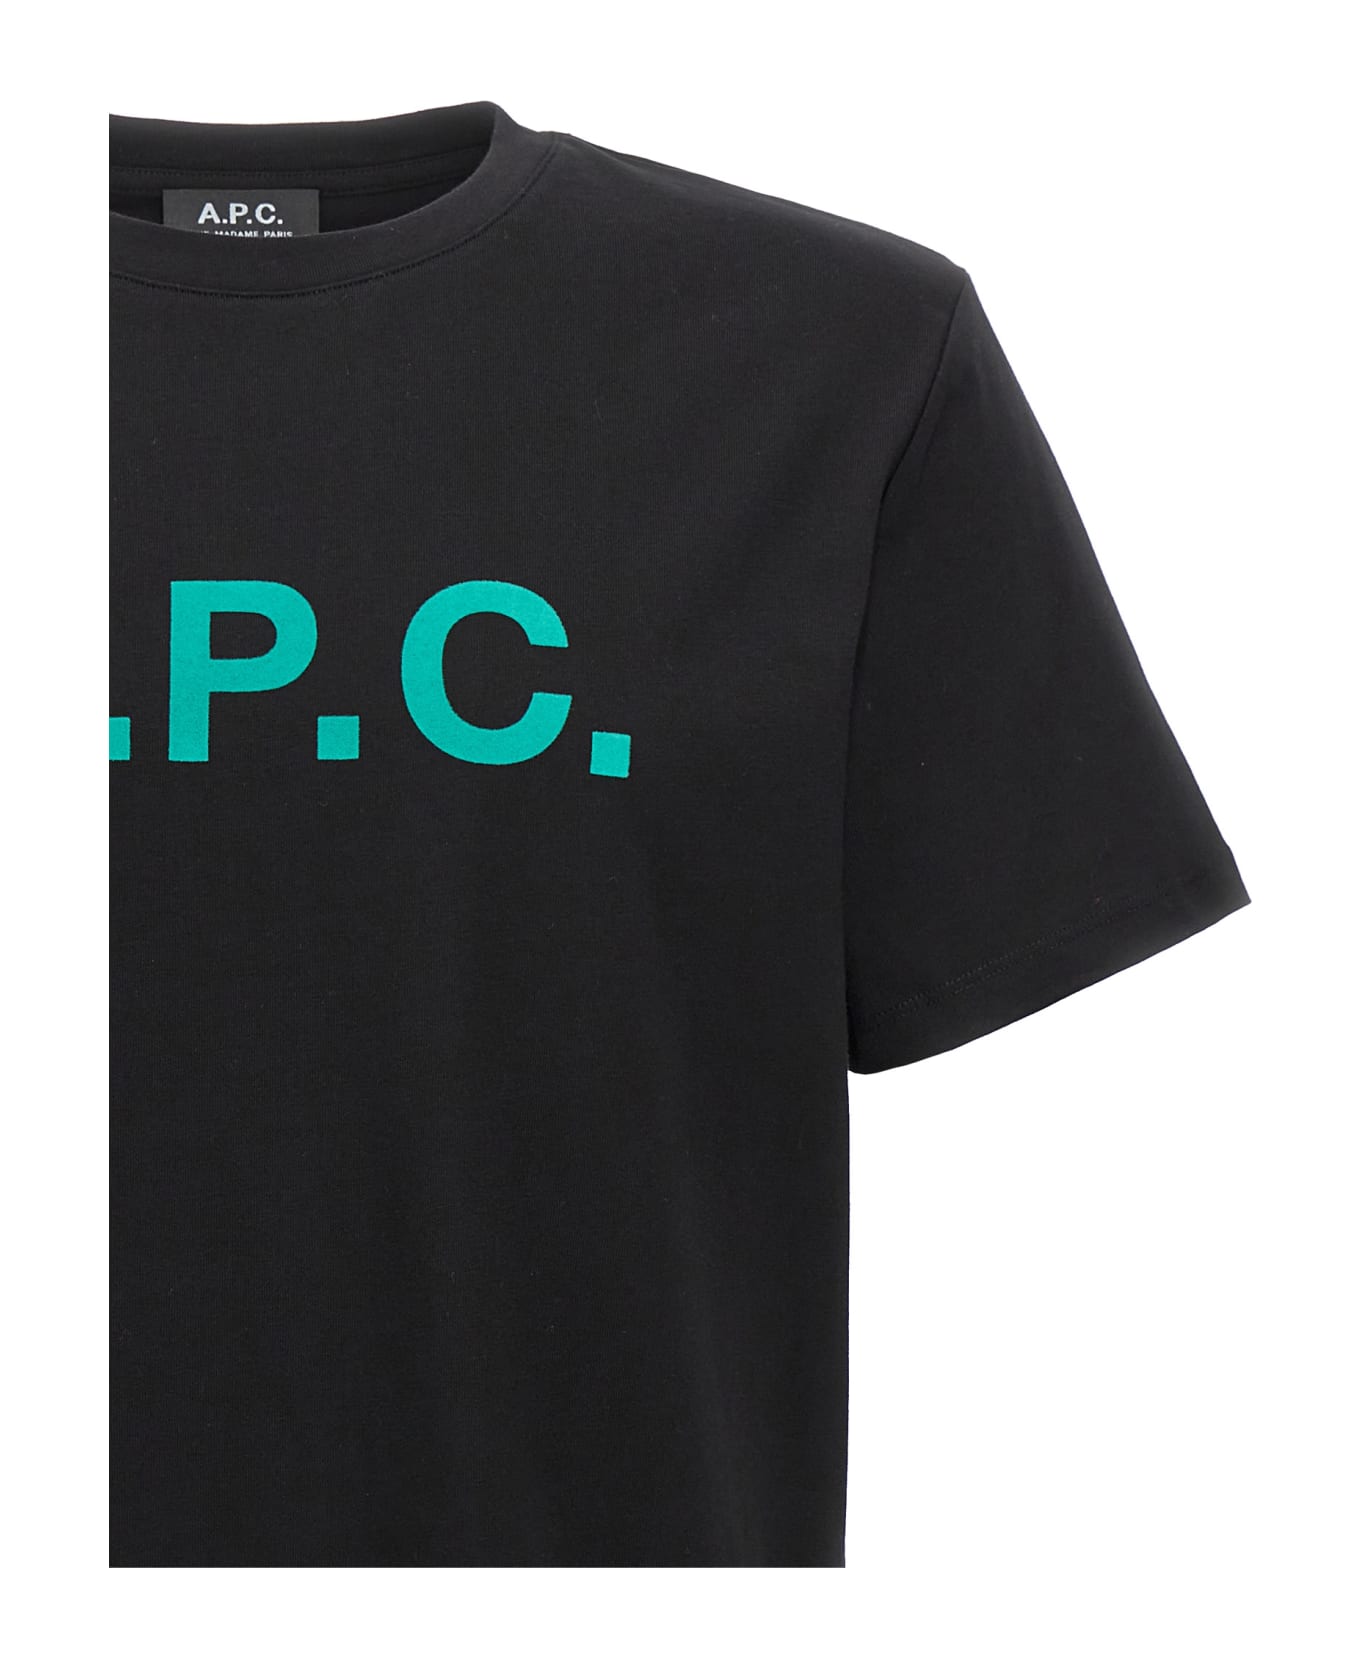 A.P.C. Vpc Logo Printed T-shirt - Black シャツ